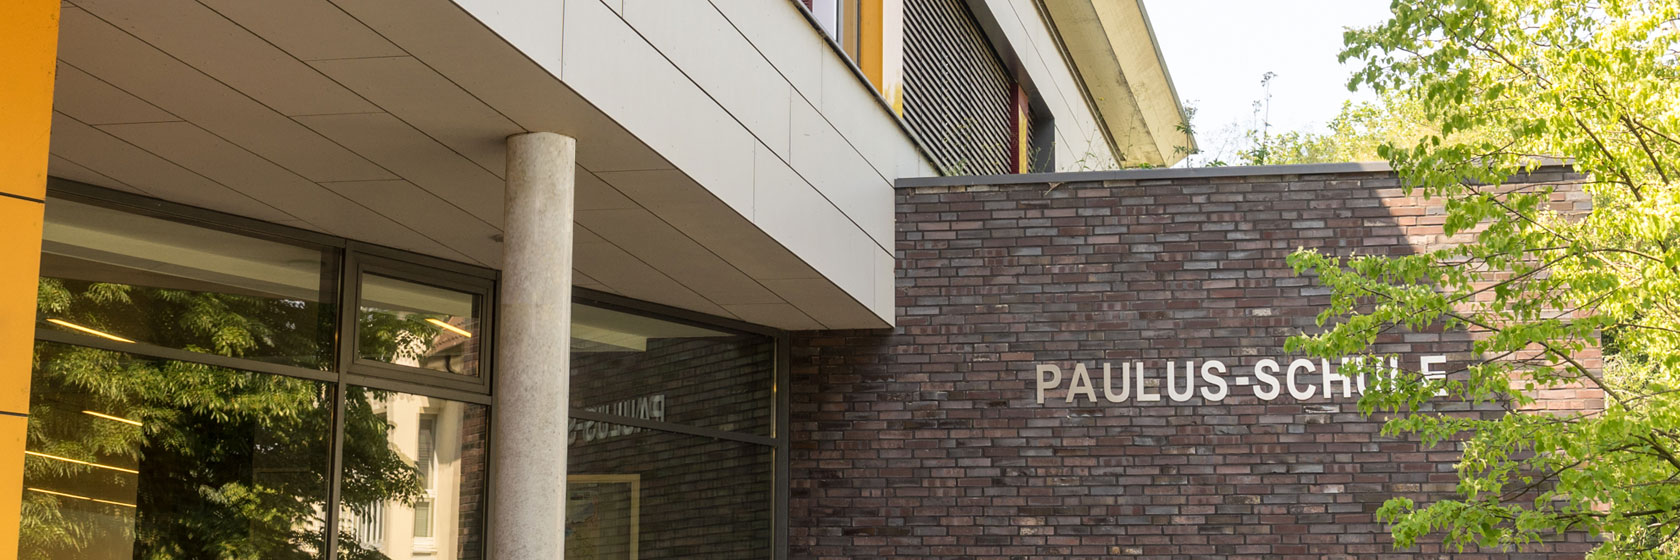 Die Paulus-Schule in Oldenburg - Katholische Oberschule